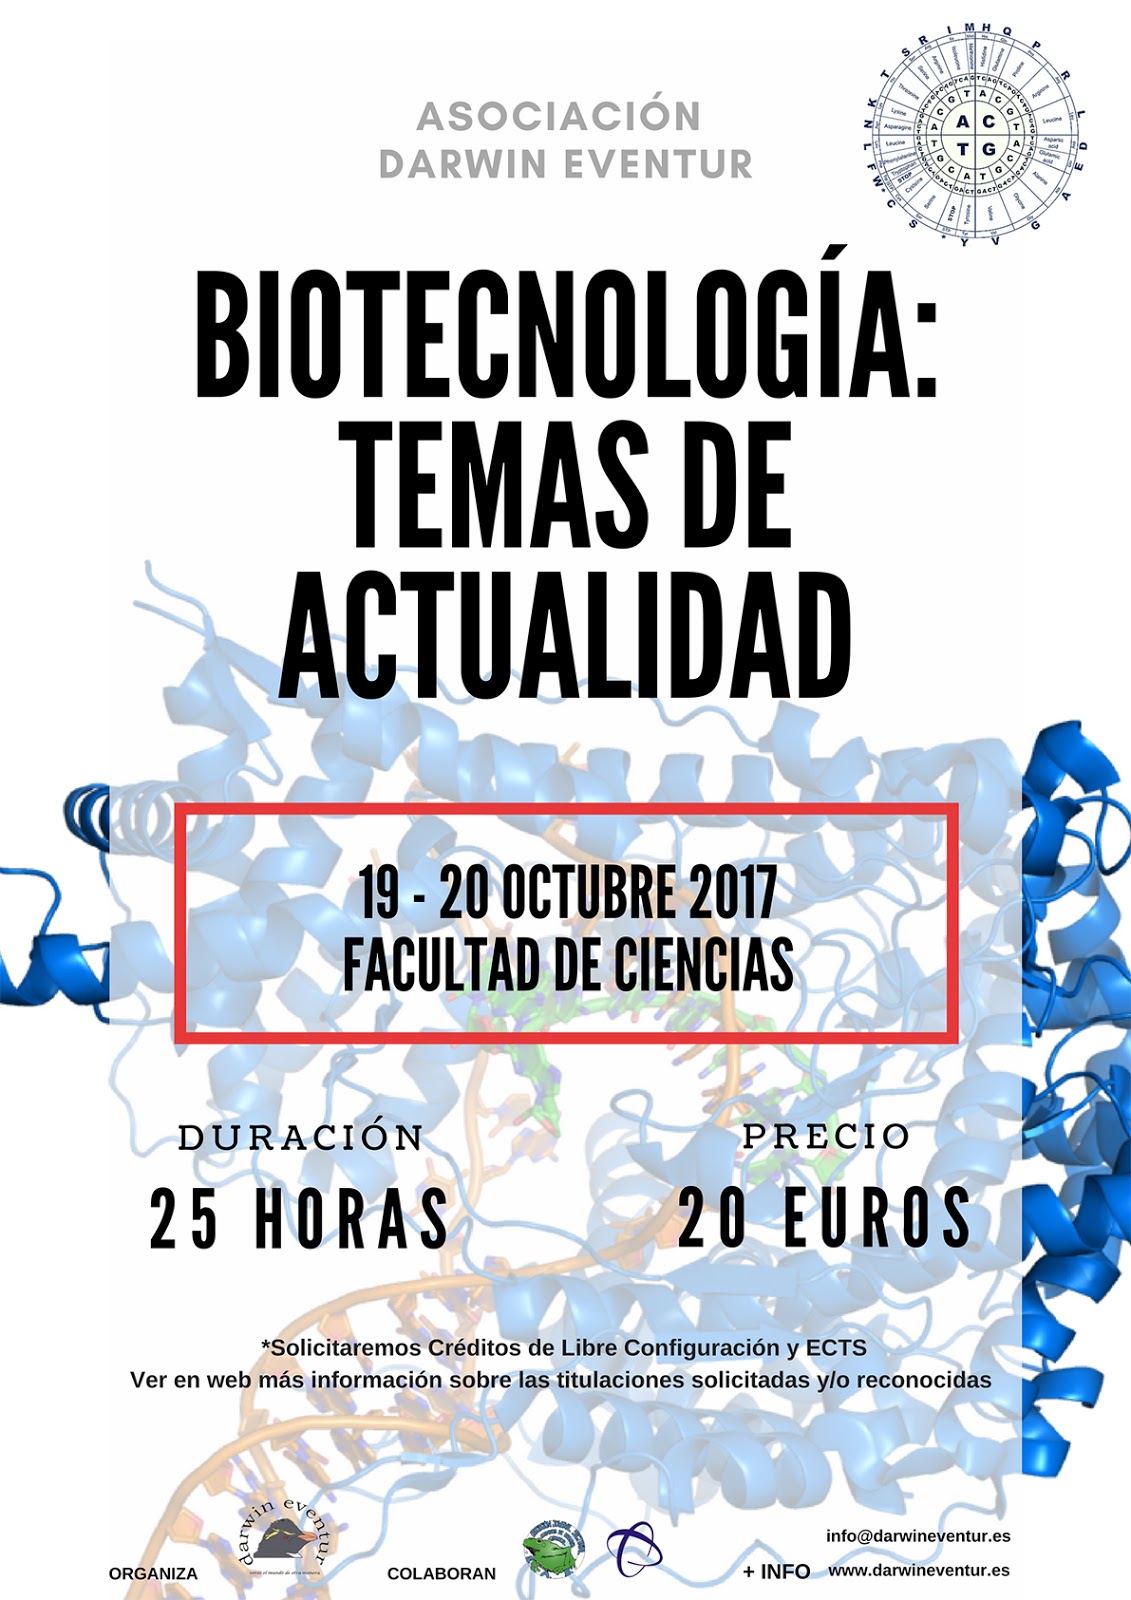 Biotecnología: Temas de actualidad